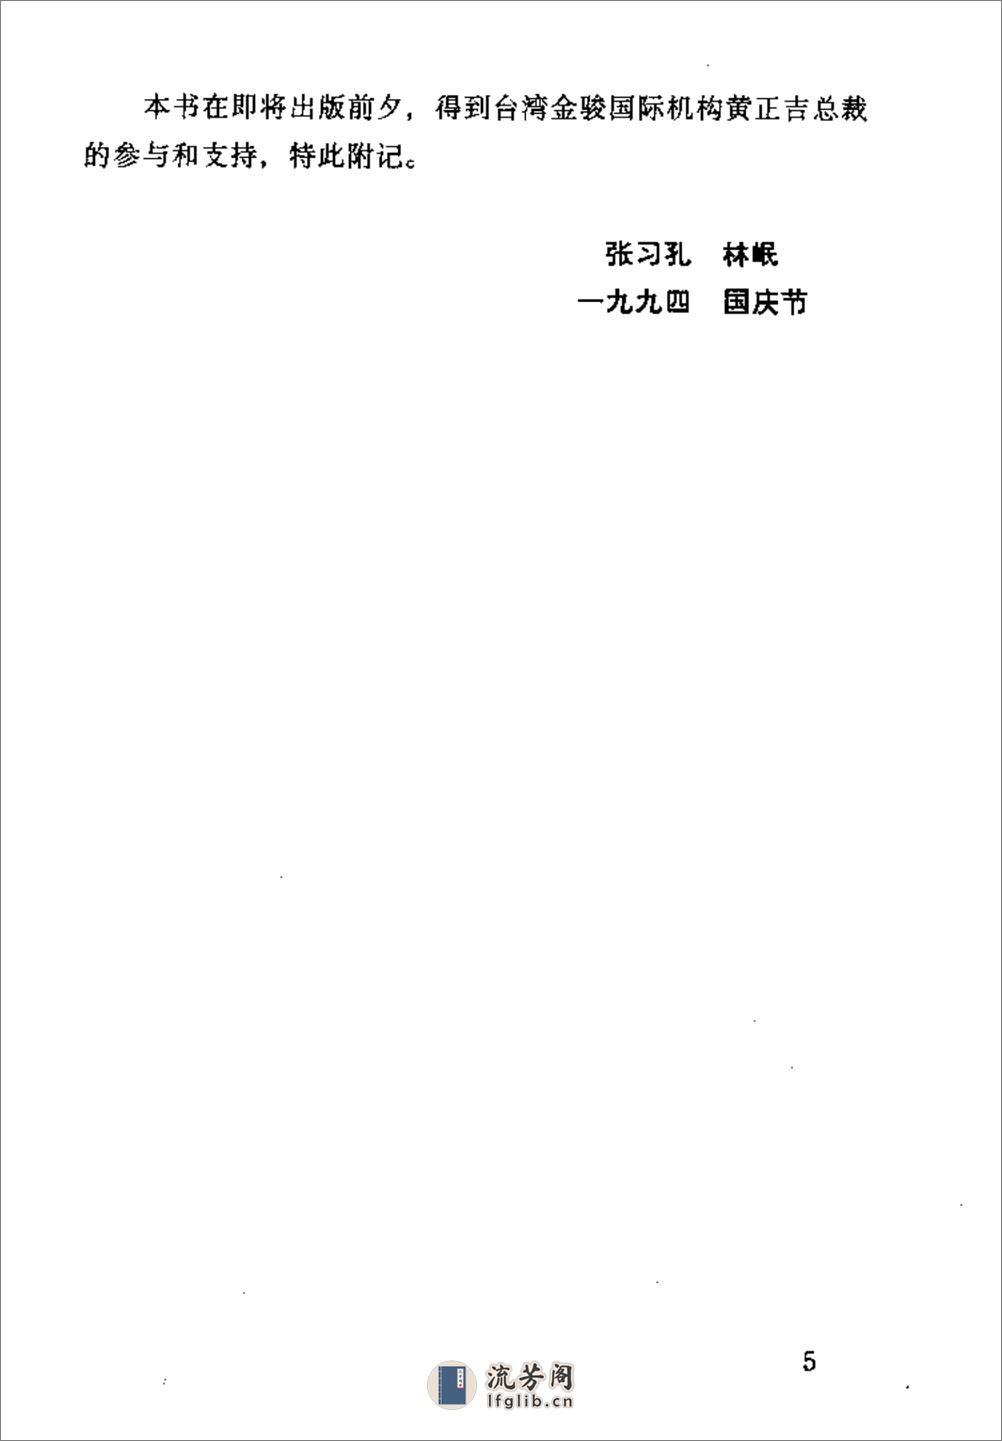 [中国历史大事本末].张习孔. - 第5页预览图